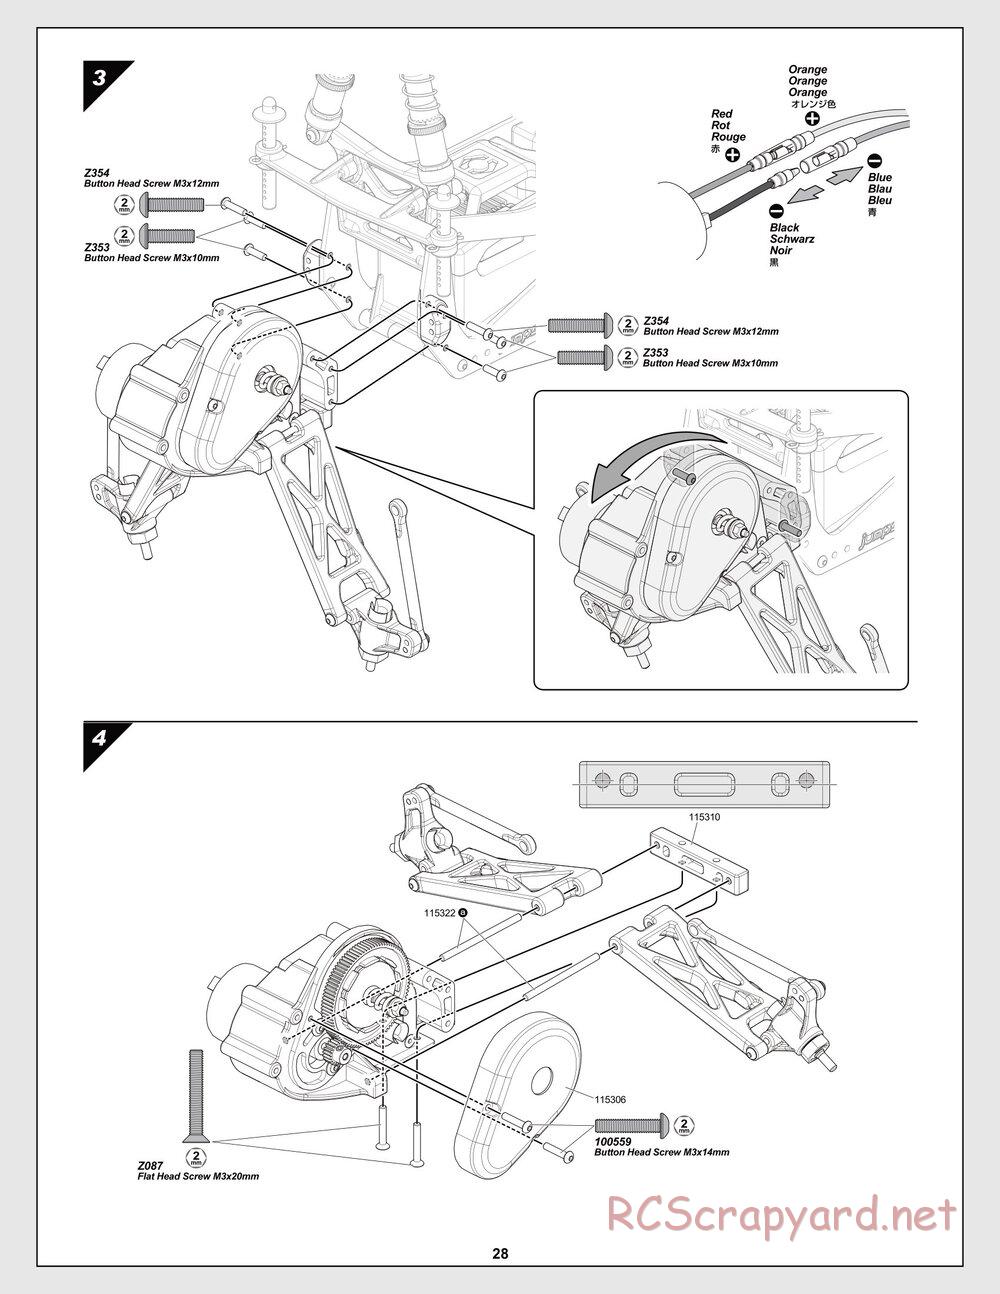 HPI - Jumpshot SC / ST V2 - Manual - Page 28